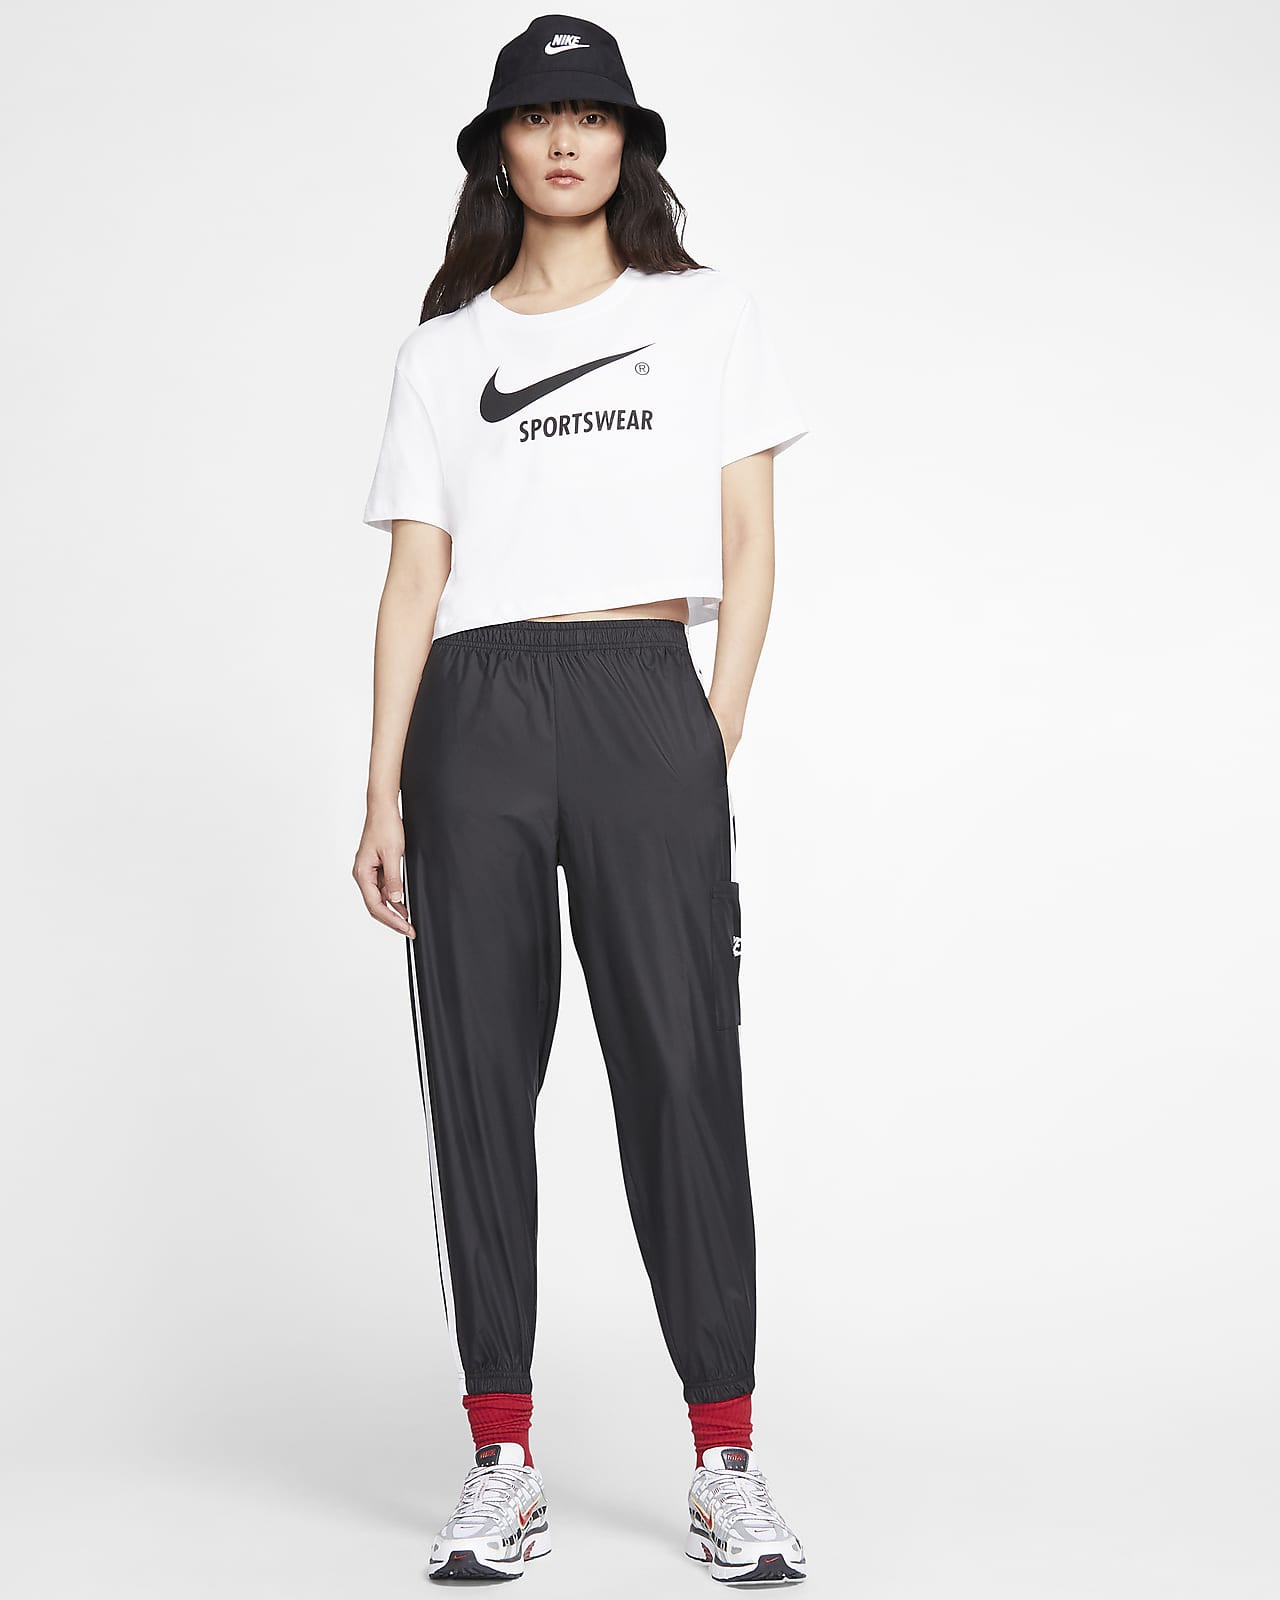 Nike Sportswear Women's Woven Pants